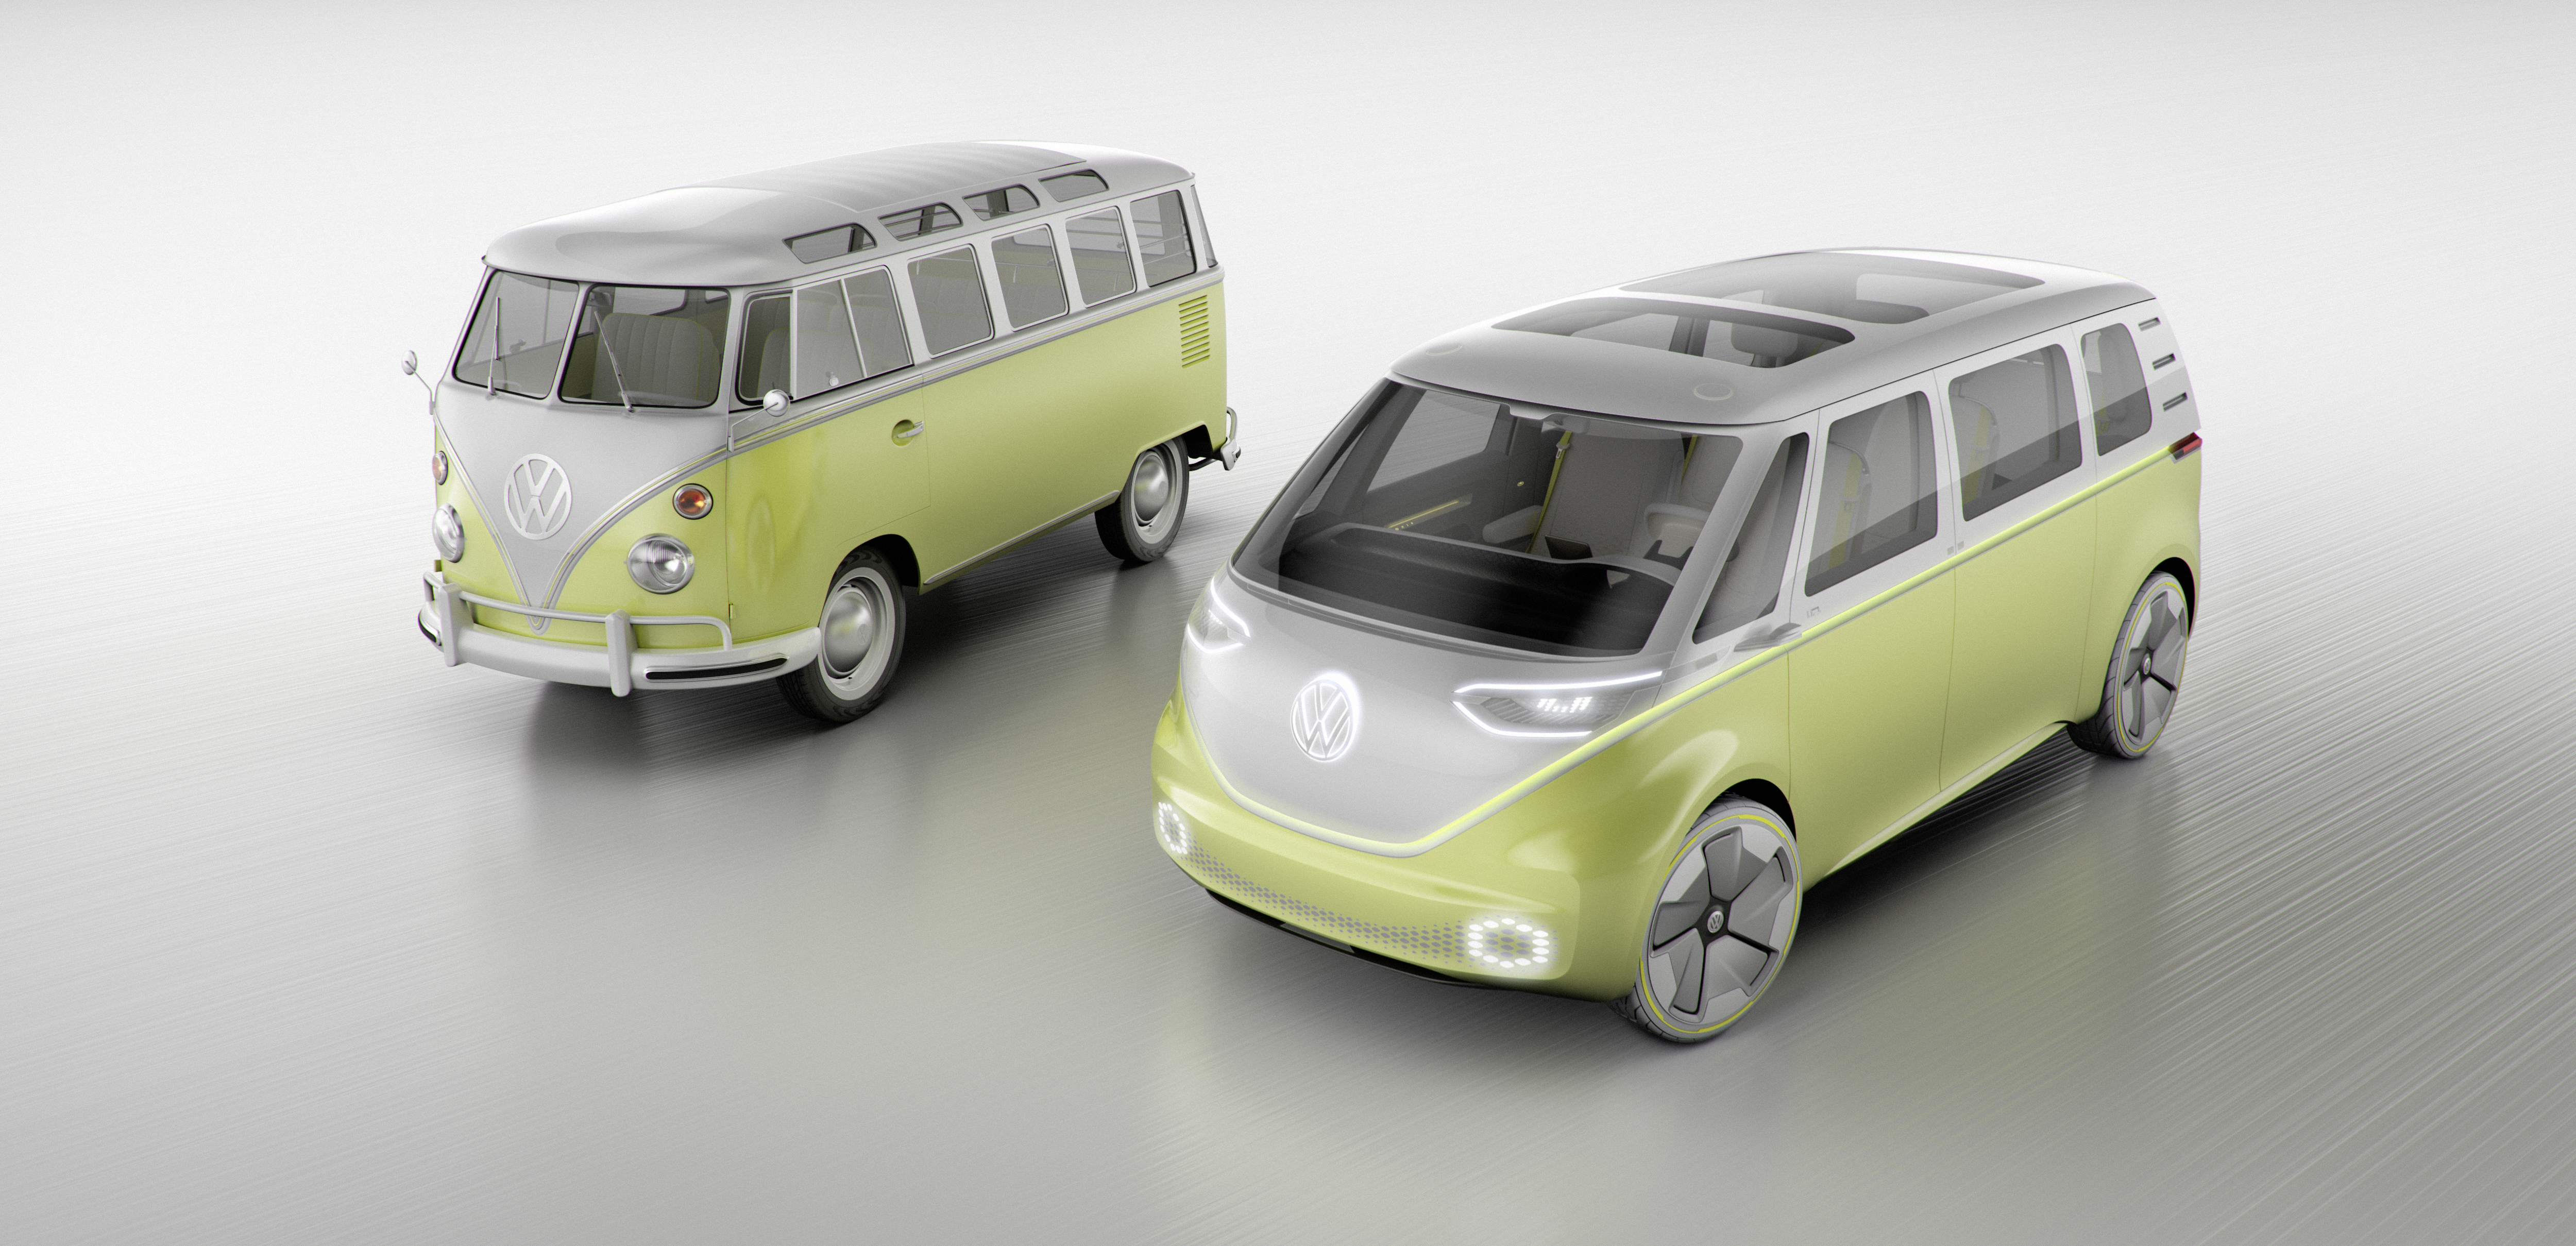 Volkswagen : le fameux minibus des 60’s revient dans un modèle autonome et électrique